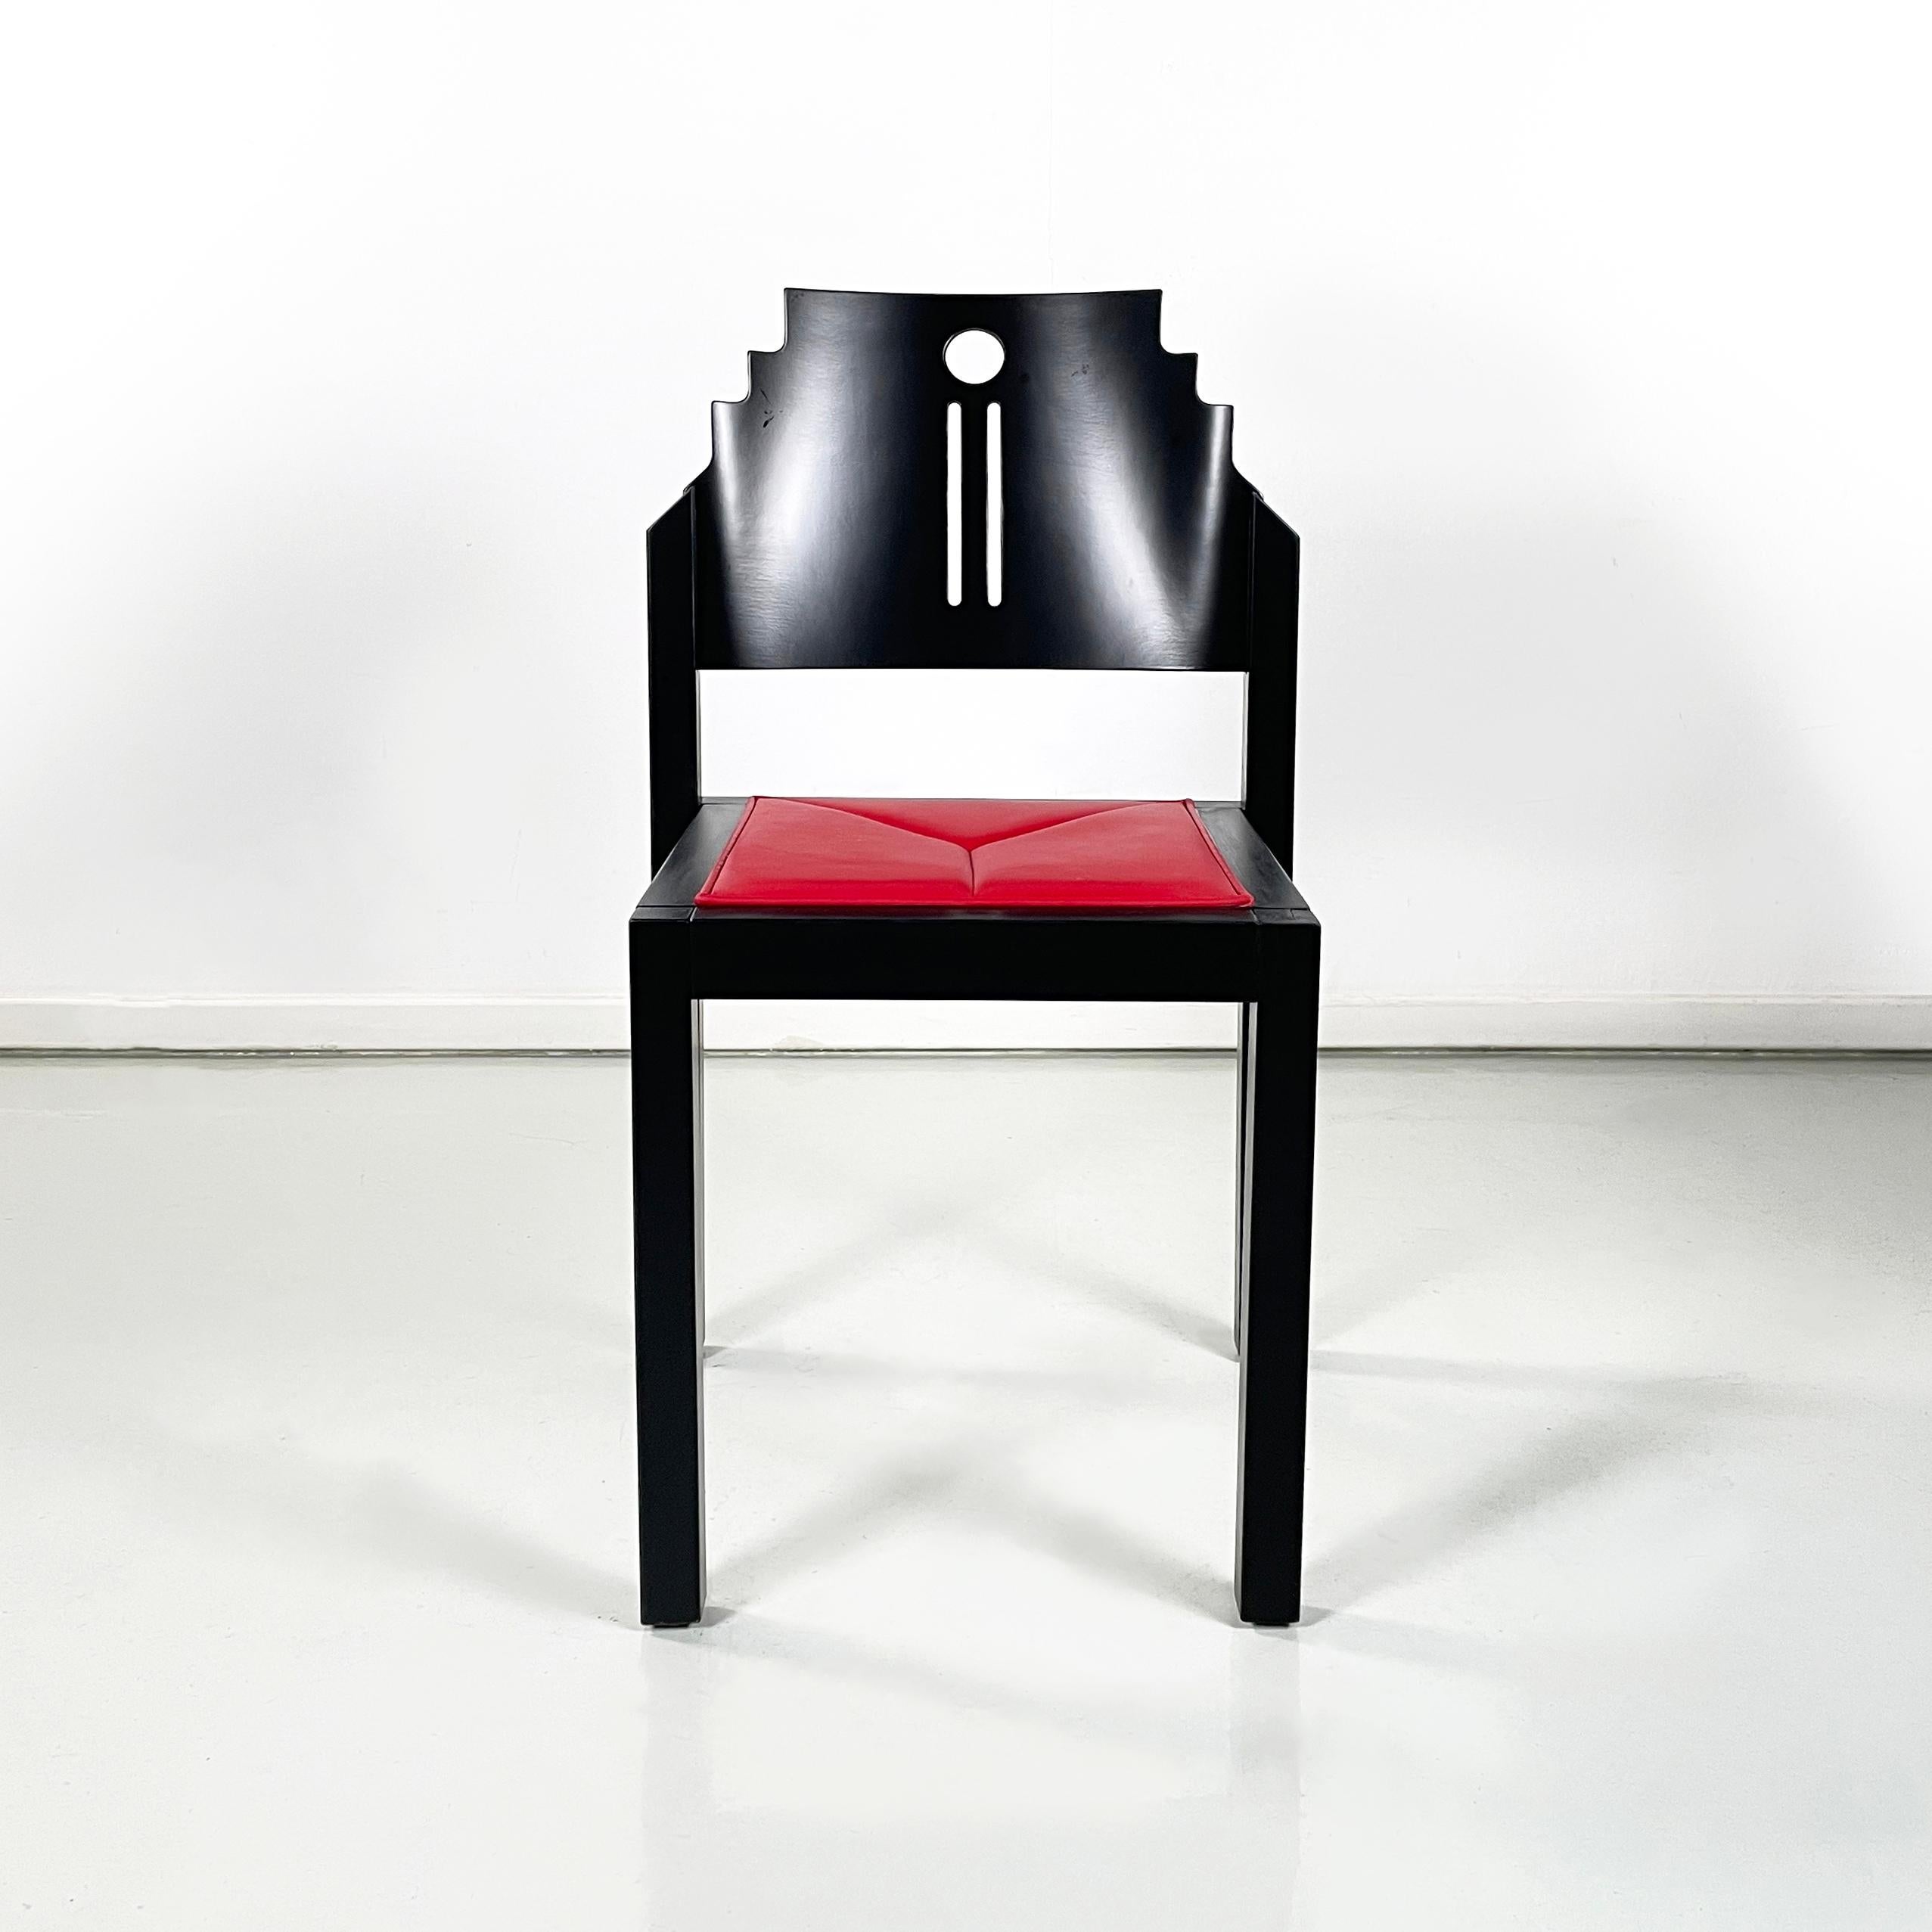 Österreichische moderne Stühle aus schwarzem Holz und rotem Leder von Thonet, 1990er Jahre
Paar Stühle mit quadratischem Sitz, bezogen mit leuchtend rotem Leder und  mit schwarz lackierter Holzstruktur, mit matter Oberfläche. Die geformte und